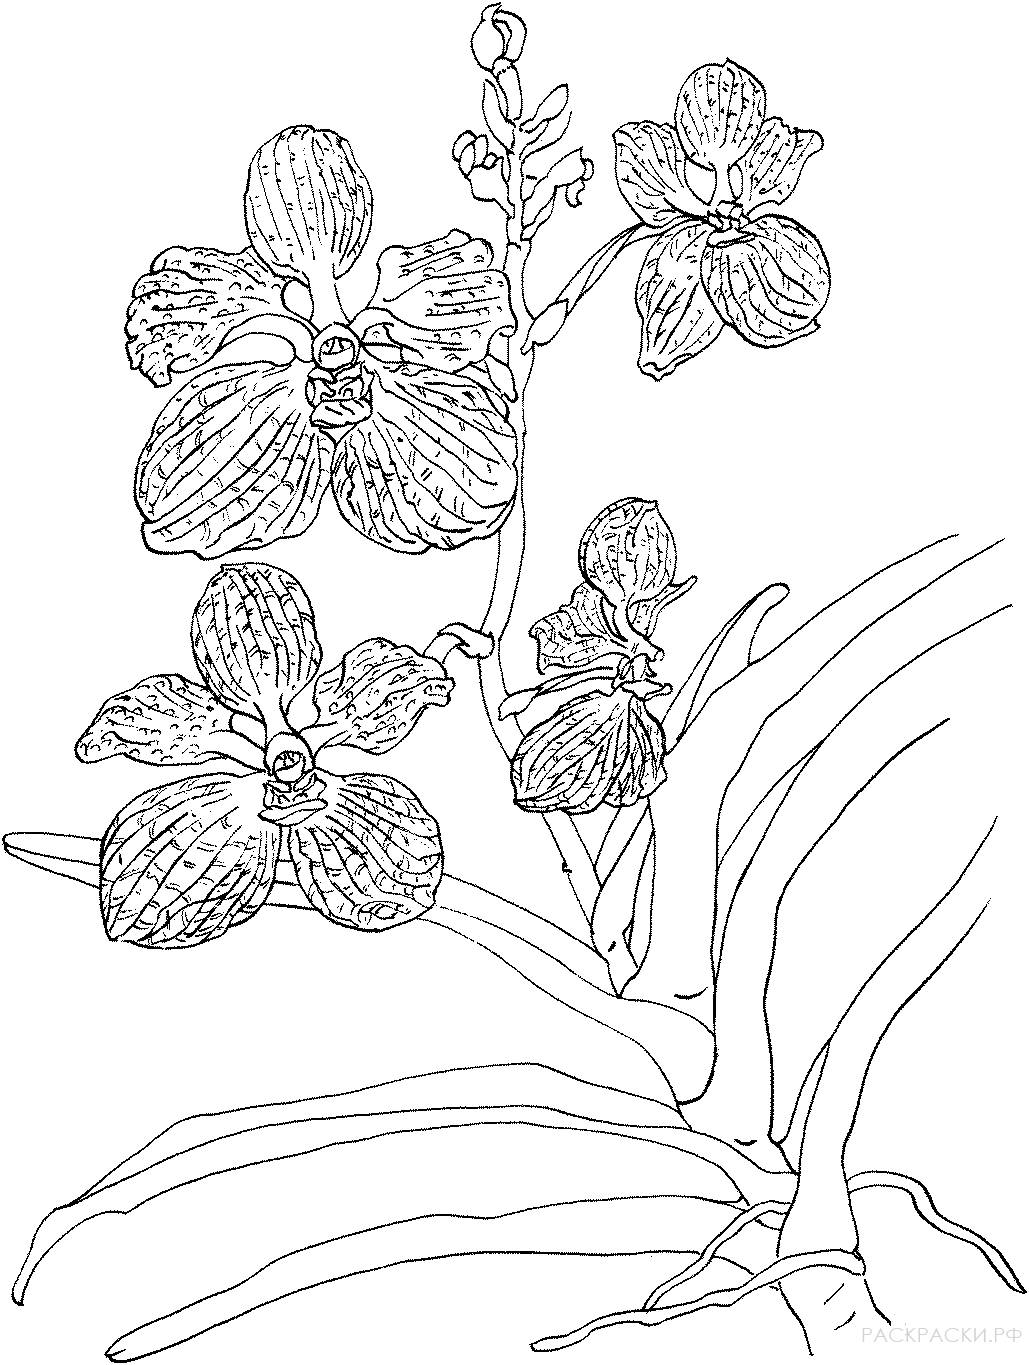 Раскраска комнатного растения Орхидея